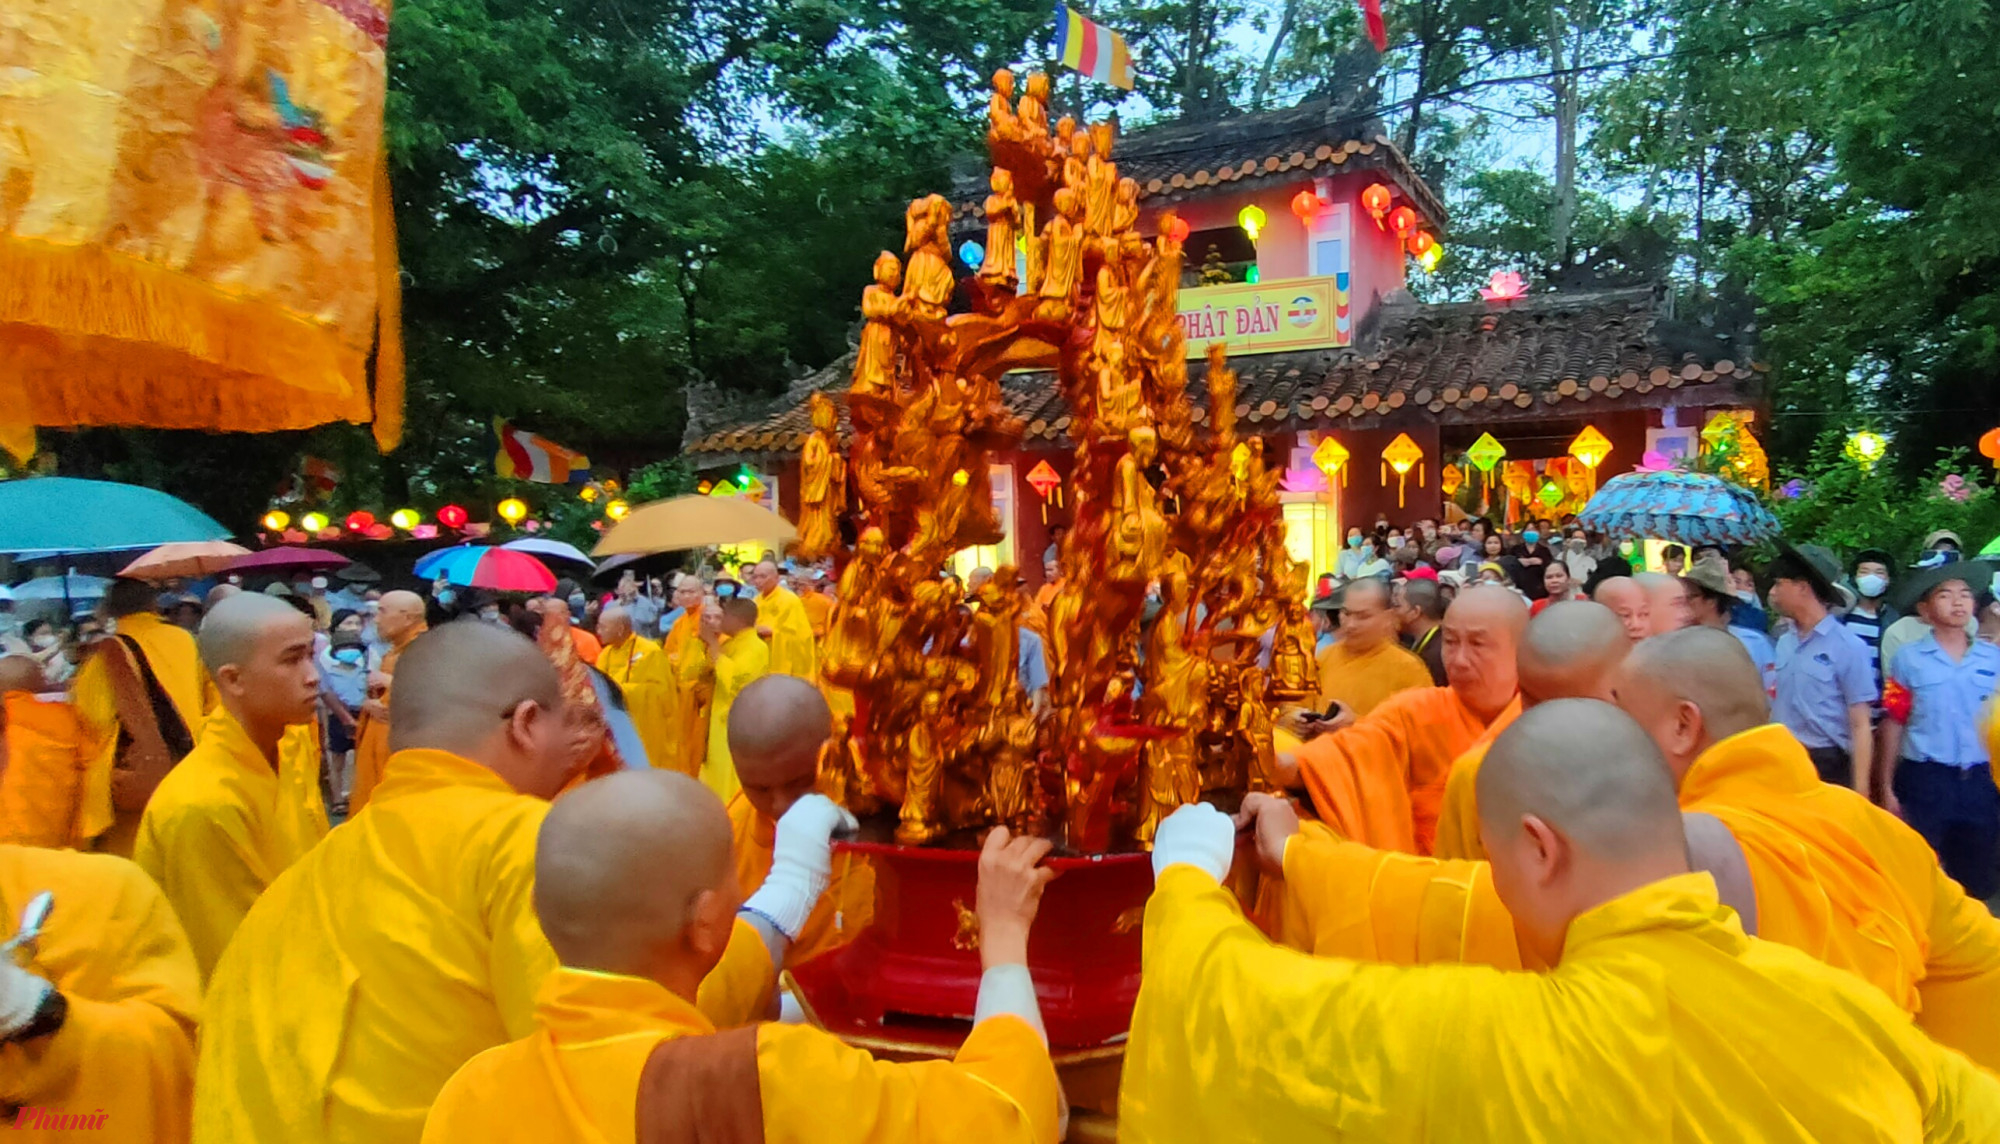 Tiếp theo đó, đoàn cung nghinh cung thỉnh kim thân Đức Phật sơ sinh từ lễ đài qua cổng tam quan chùa Diệu Đế trước khi thỉnh kim thân Đức Phật sơ sinh tôn trí trên xe hoa.  